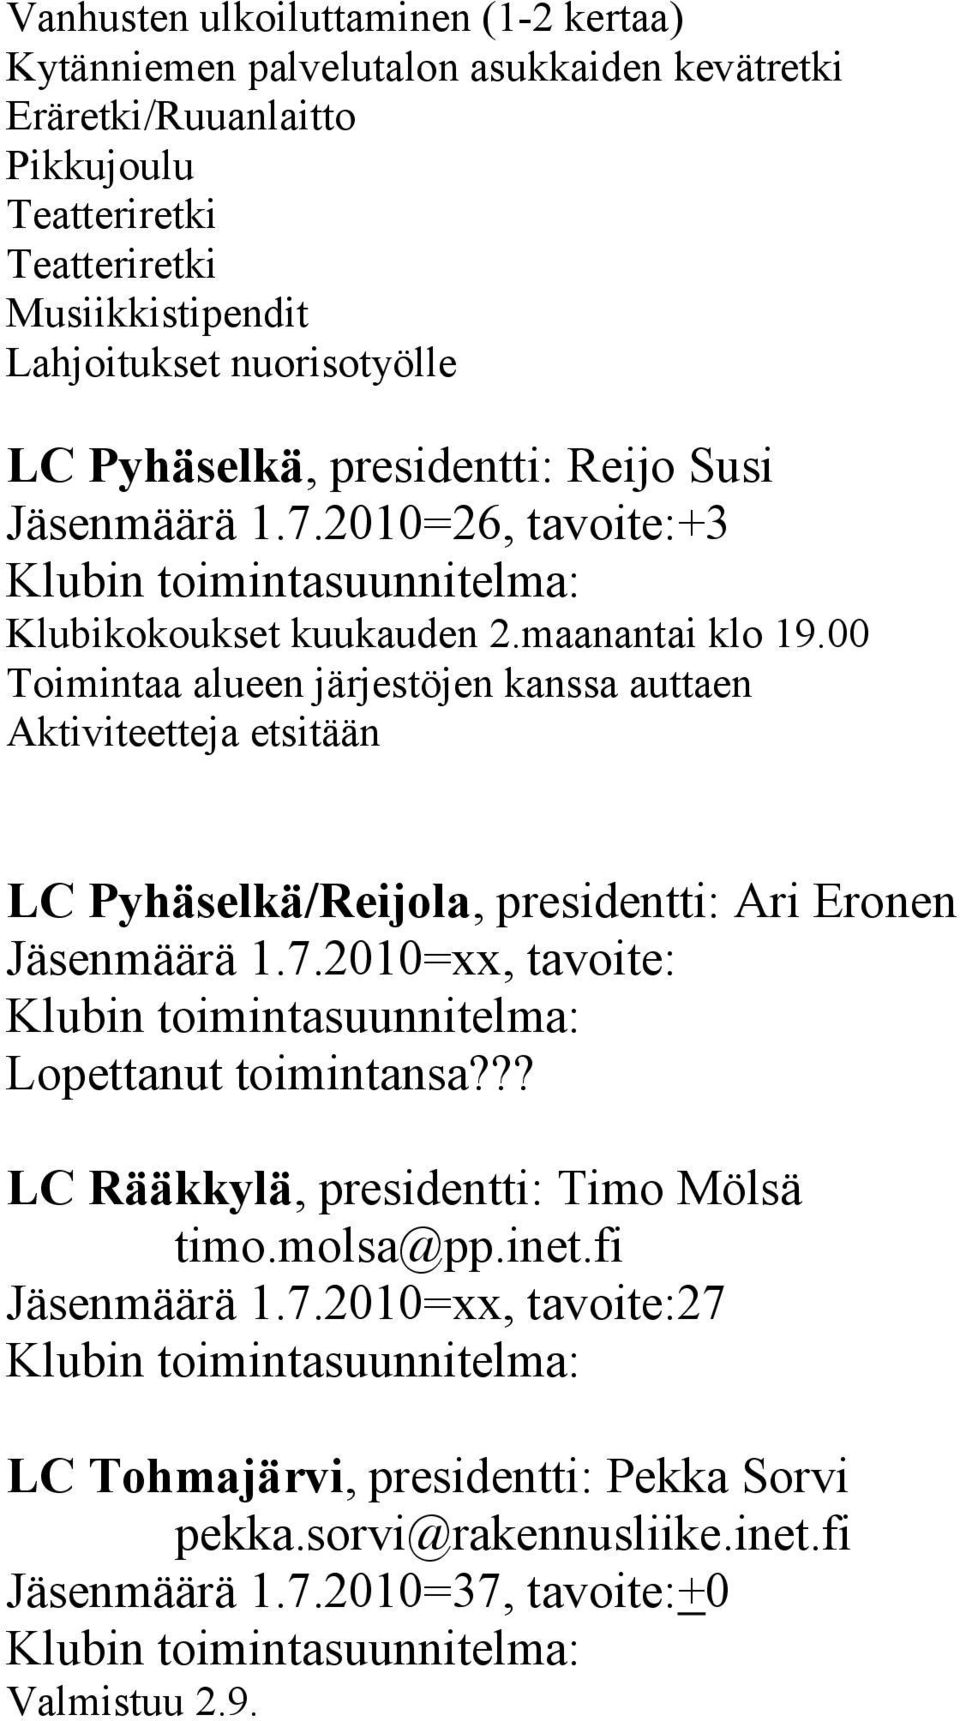 00 Toimintaa alueen järjestöjen kanssa auttaen Aktiviteetteja etsitään LC Pyhäselkä/Reijola, presidentti: Ari Eronen Jäsenmäärä 1.7.2010=xx, tavoite: Lopettanut toimintansa?